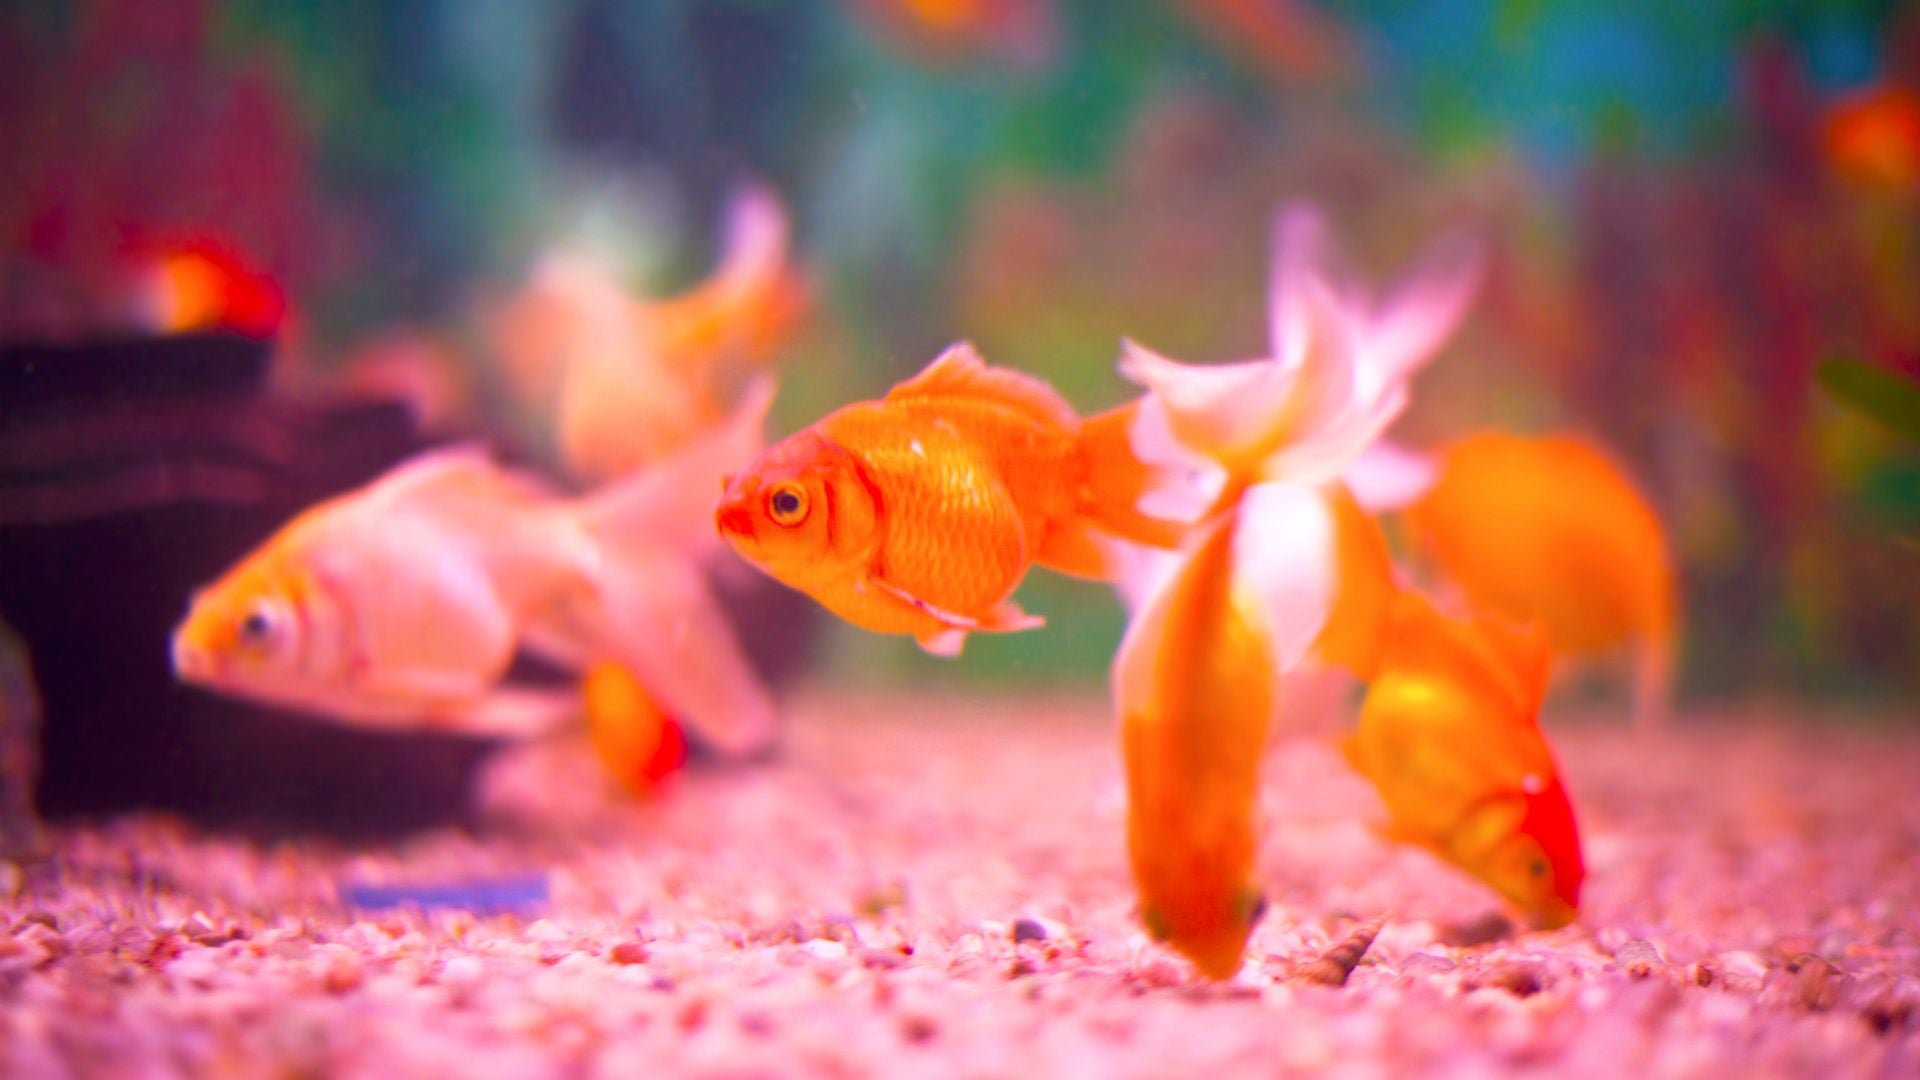 closeup image of an aquarium